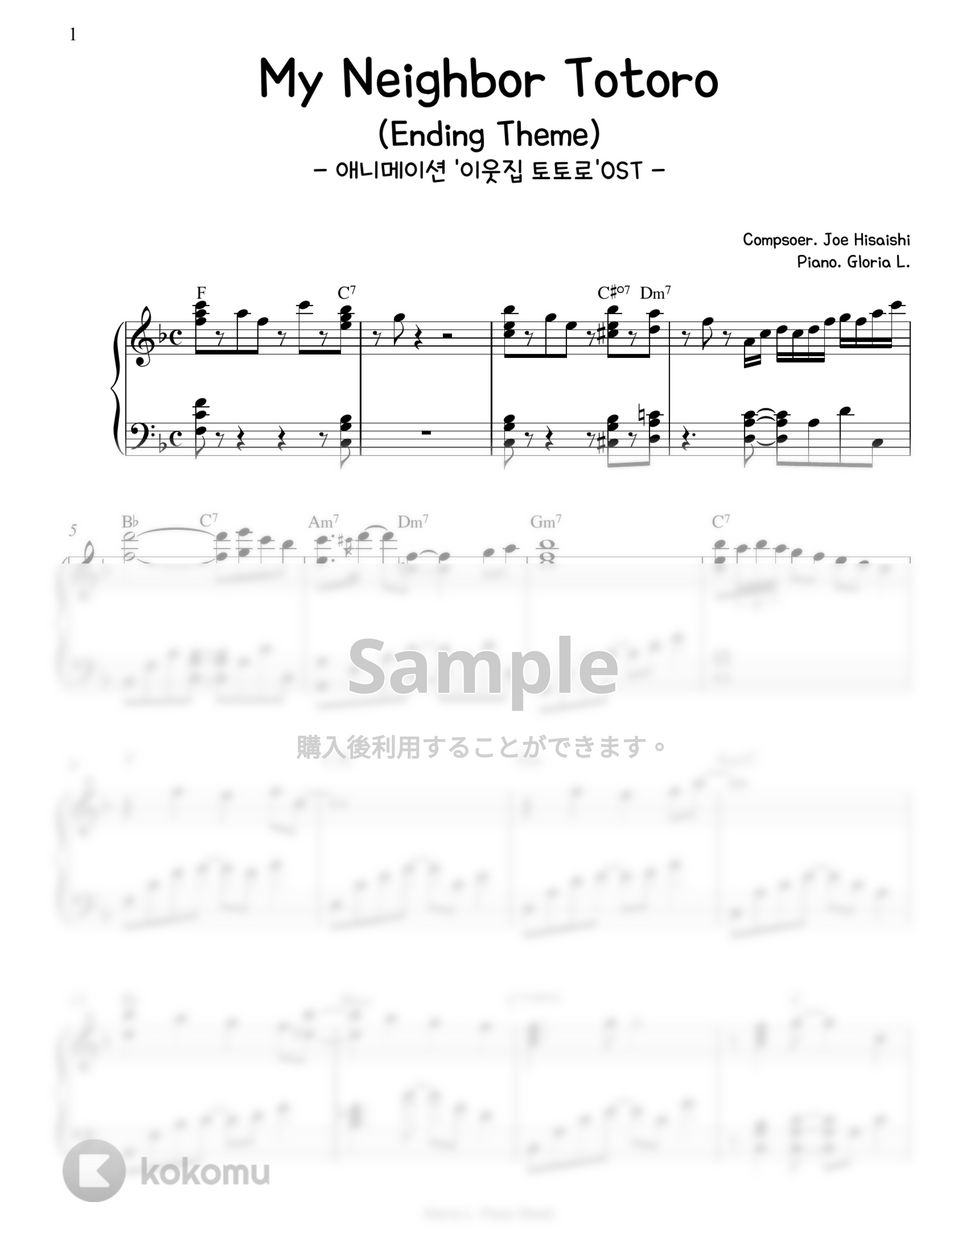 となりのトトロ OST (이웃집 토토로) - My Neighbor Totoro (Ending Theme) by Gloria L.